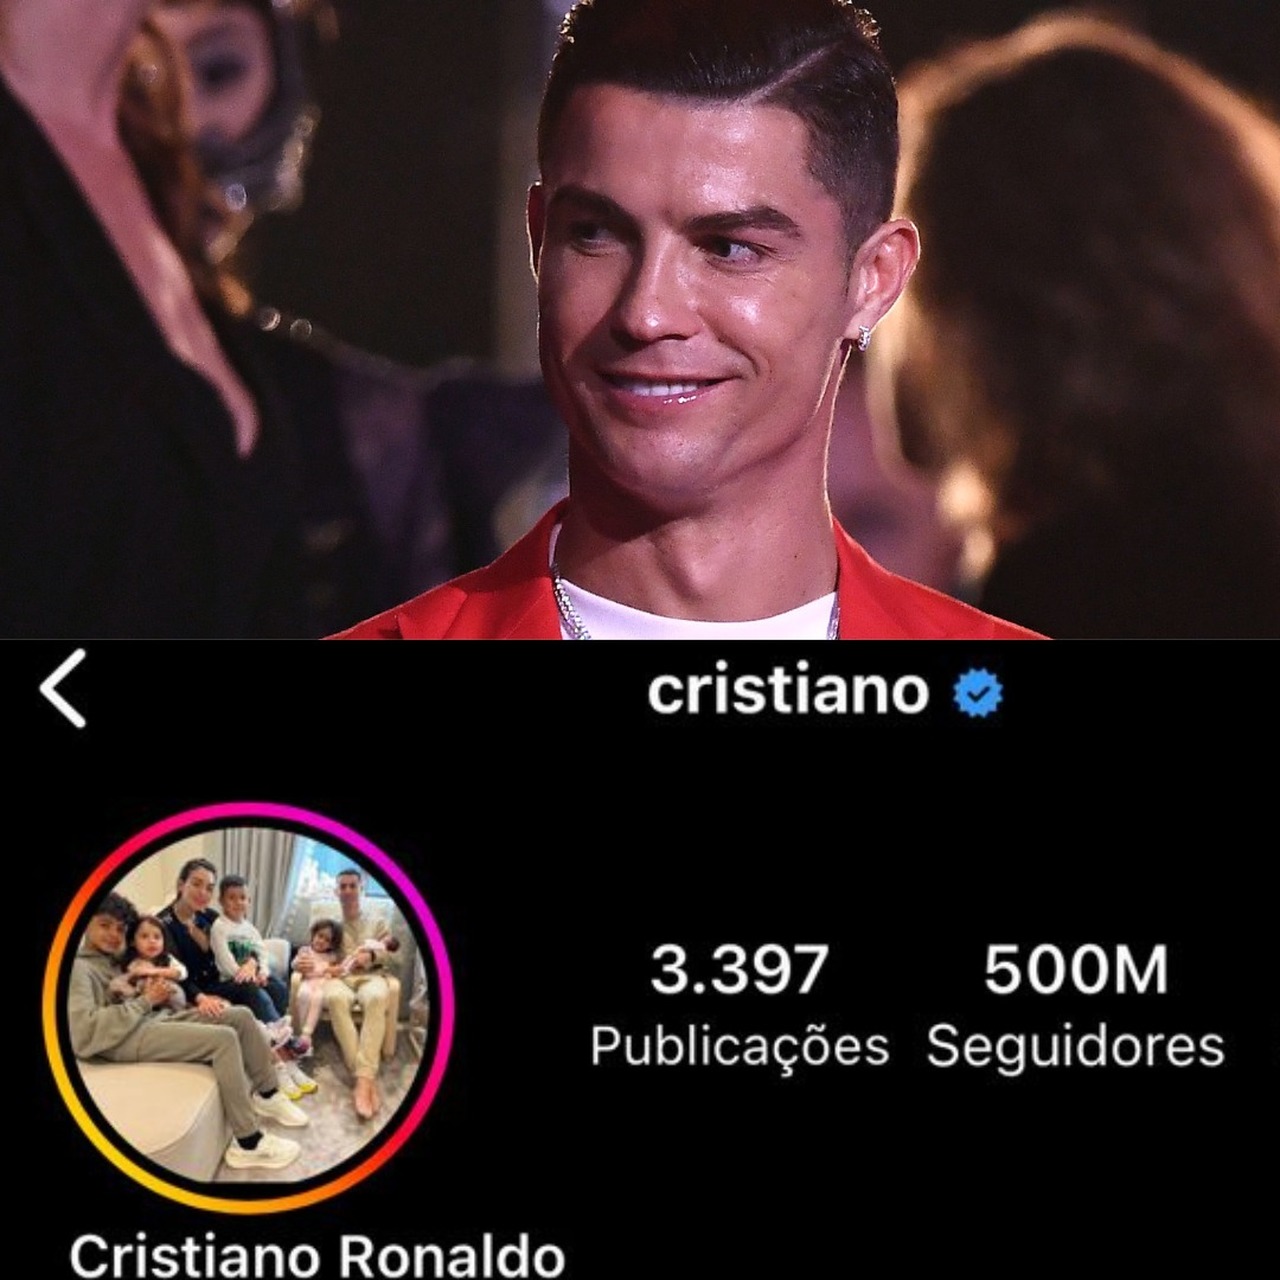 Cristiano Ronaldo se torna a 1ª pessoa a atingir 500 milhões de